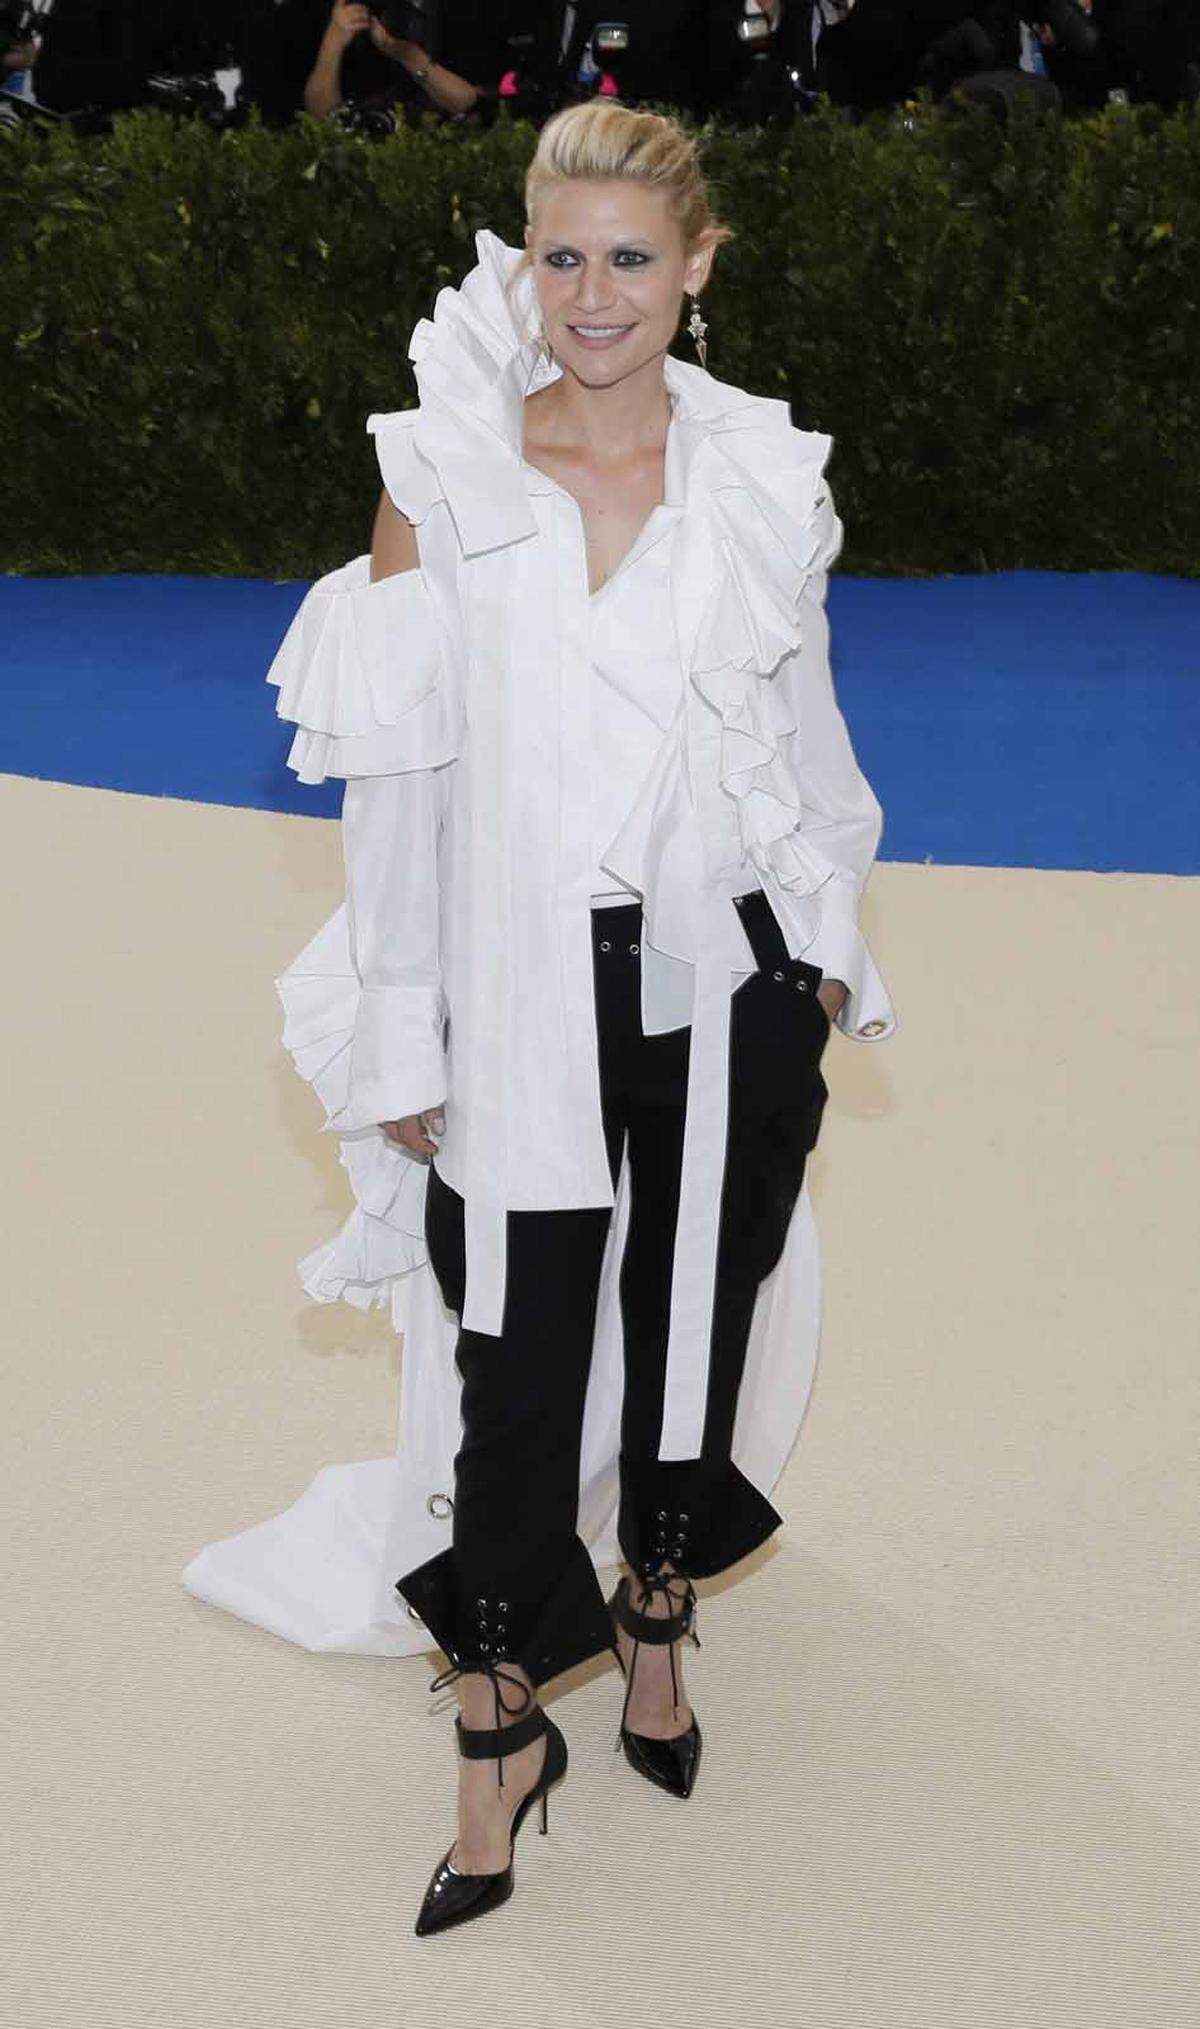 Die berühmte Met-Gala ist immer wieder für modische Überraschungen gut. Schauspielerin Claire Danes wirkte in diesem Outfit jedoch etwas derangiert.  